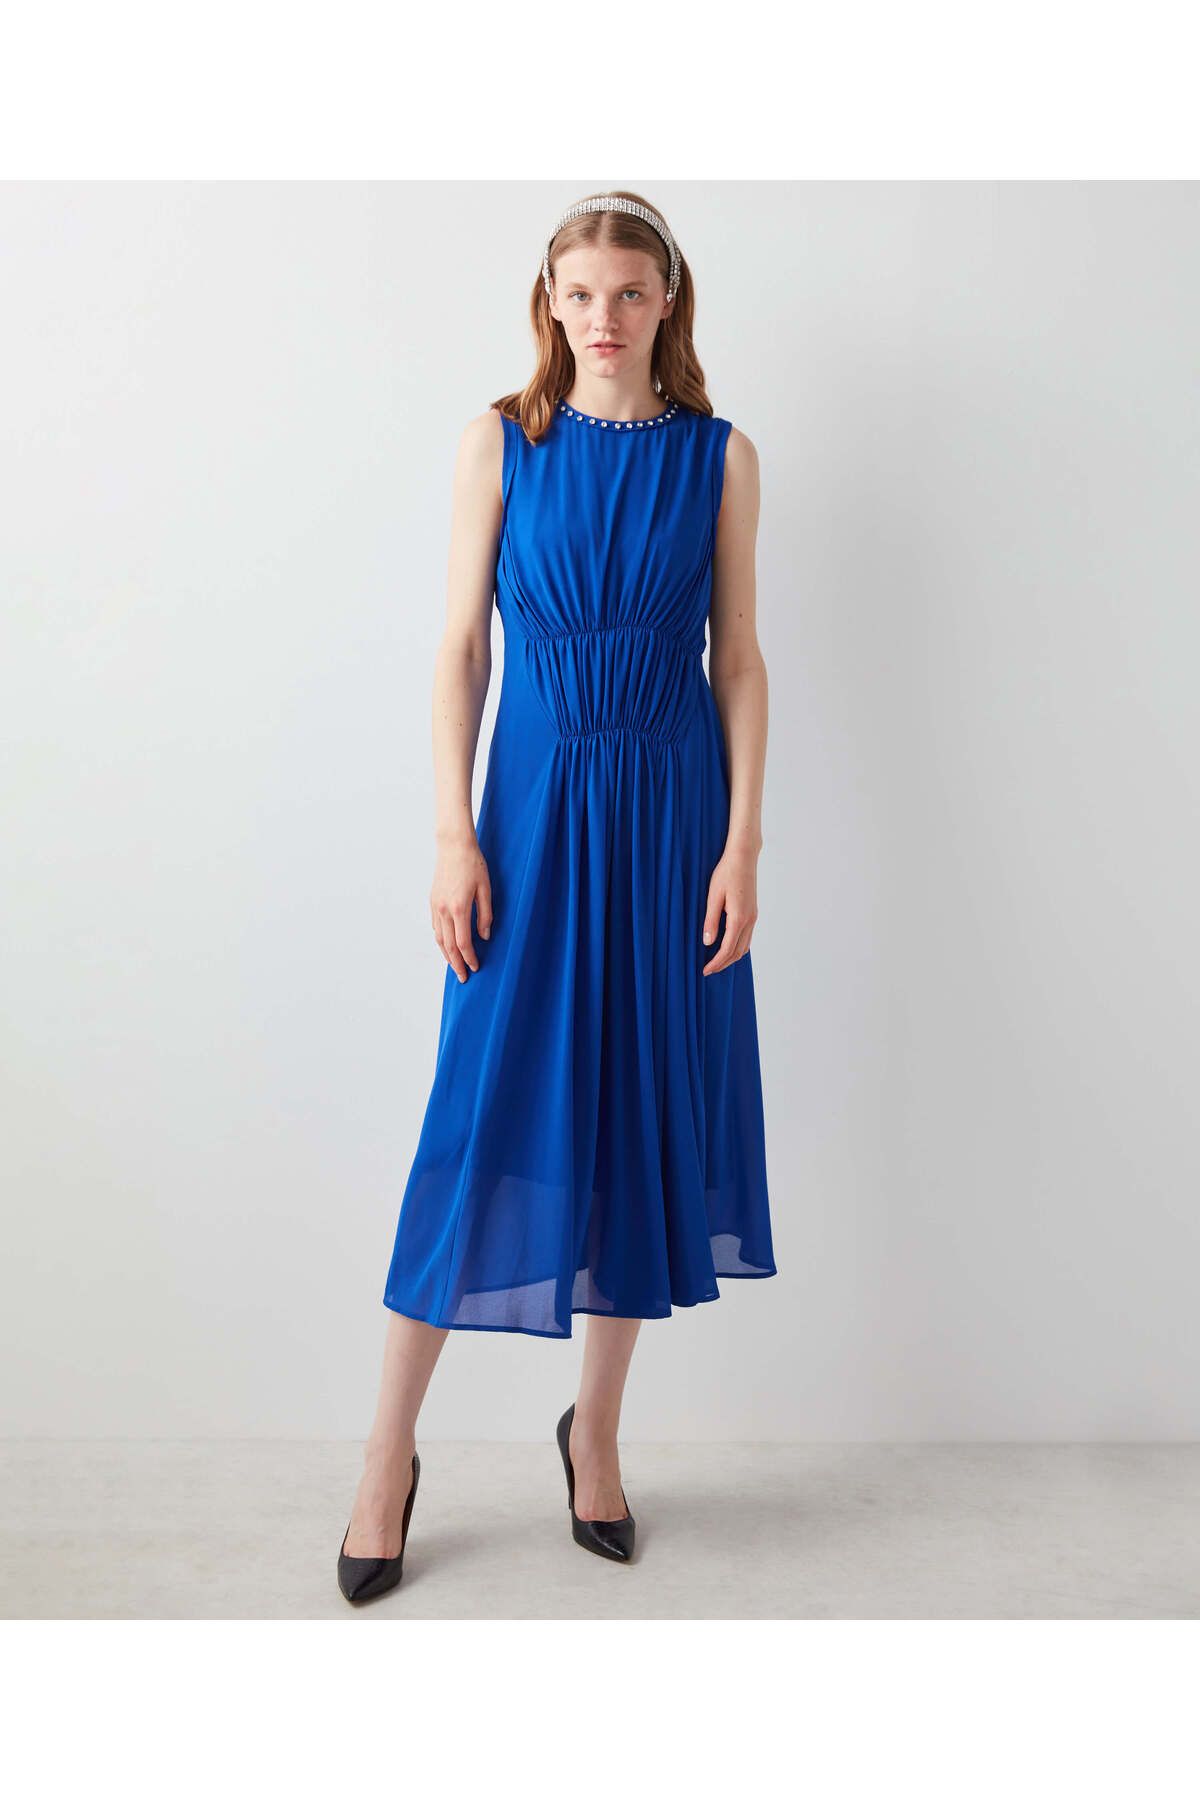 İpekyol Kadın Parlak Mavi Elbise